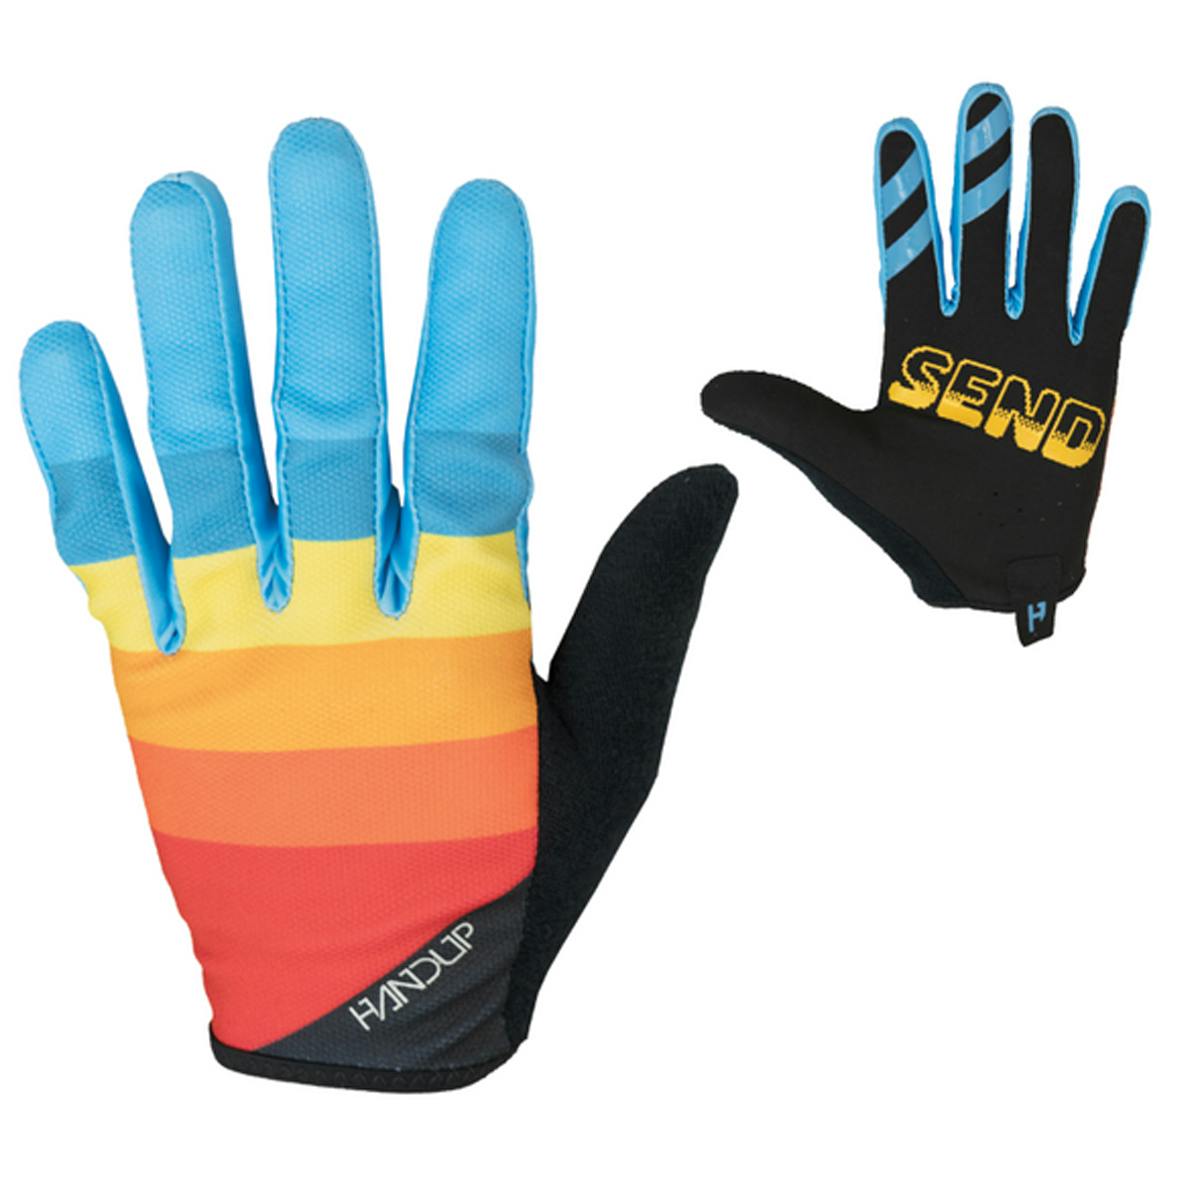 Hand Up Gloves Old School Bike Gloves - XL